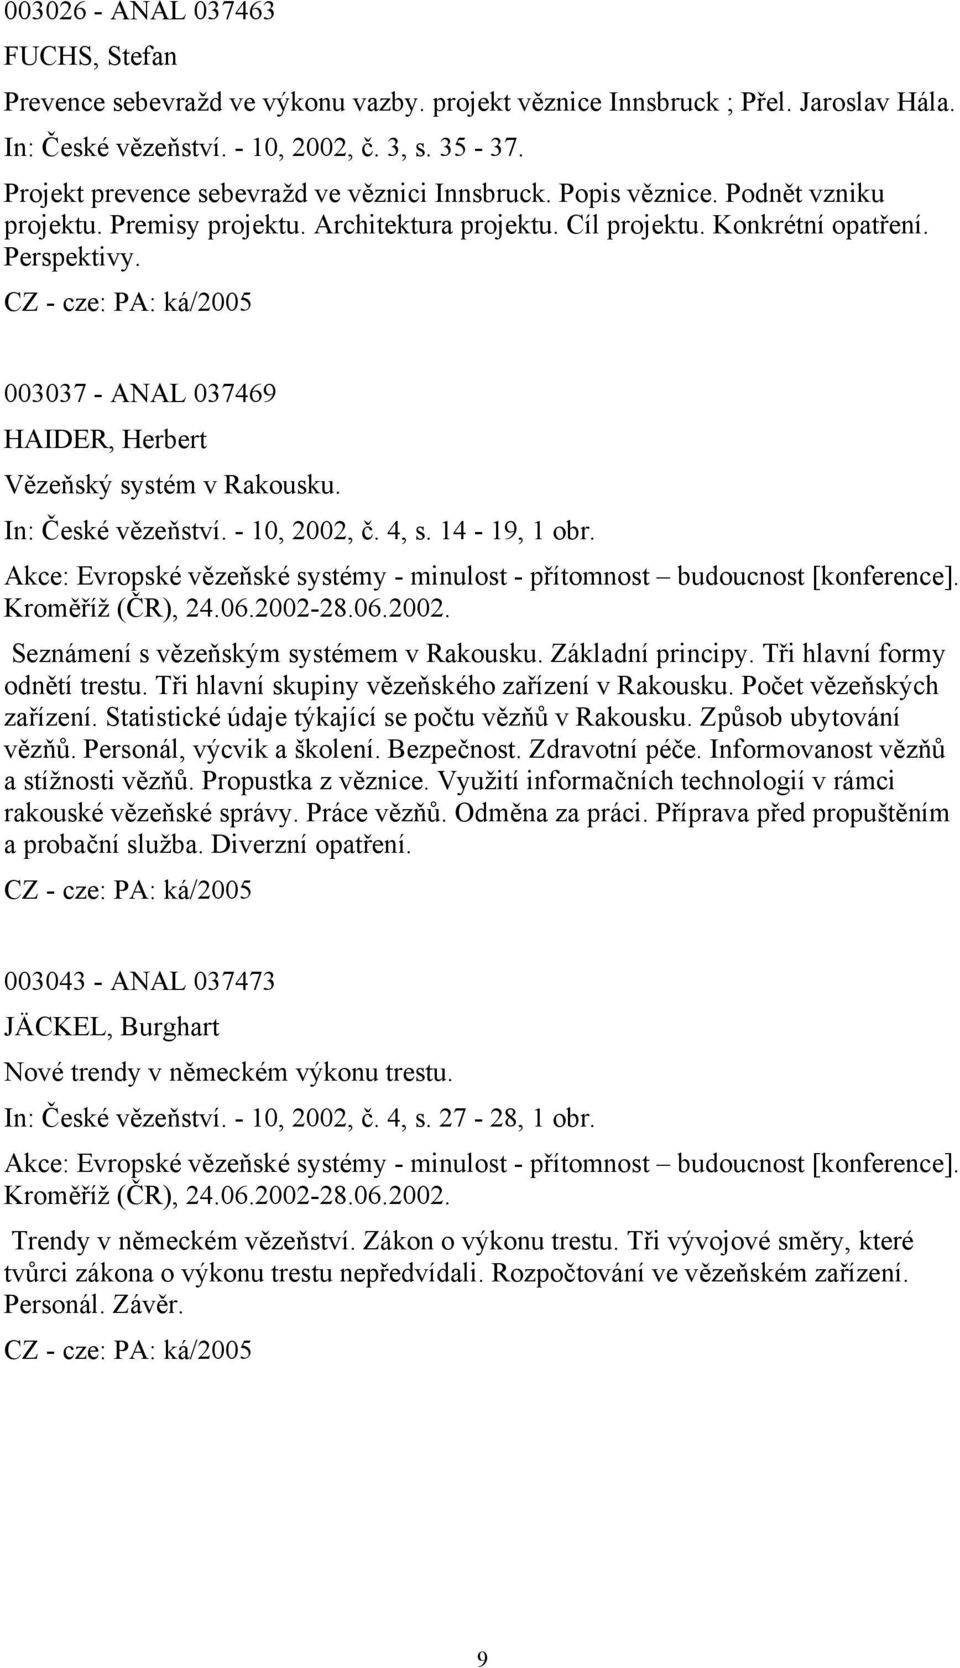 003037 - ANAL 037469 HAIDER, Herbert Vězeňský systém v Rakousku. In: České vězeňství. - 10, 2002, č. 4, s. 14-19, 1 obr.